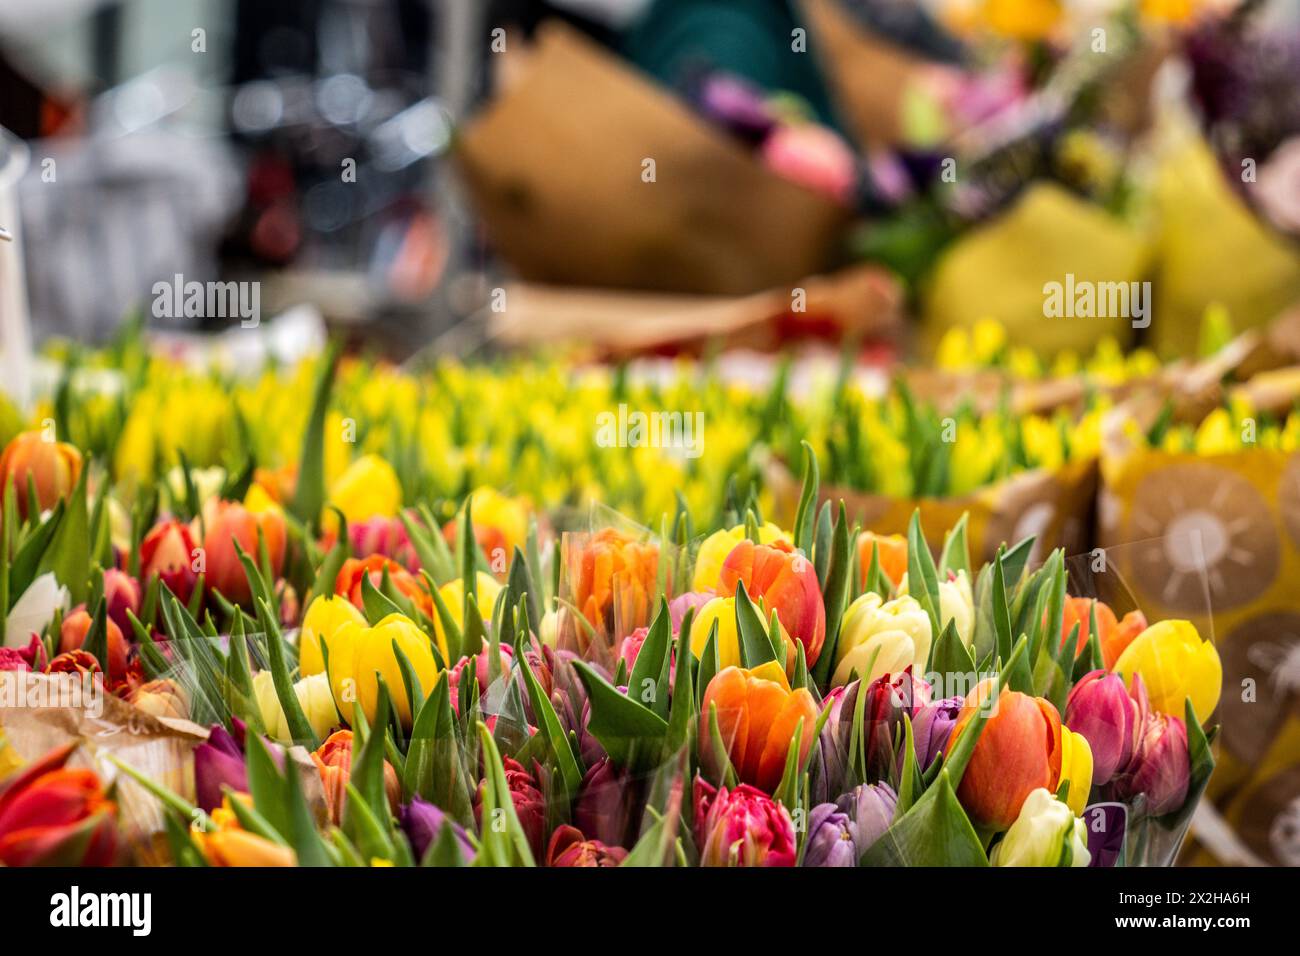 Fleuriste marché urbain, quartier de Pijp, Amsterdam, pays-Bas Banque D'Images